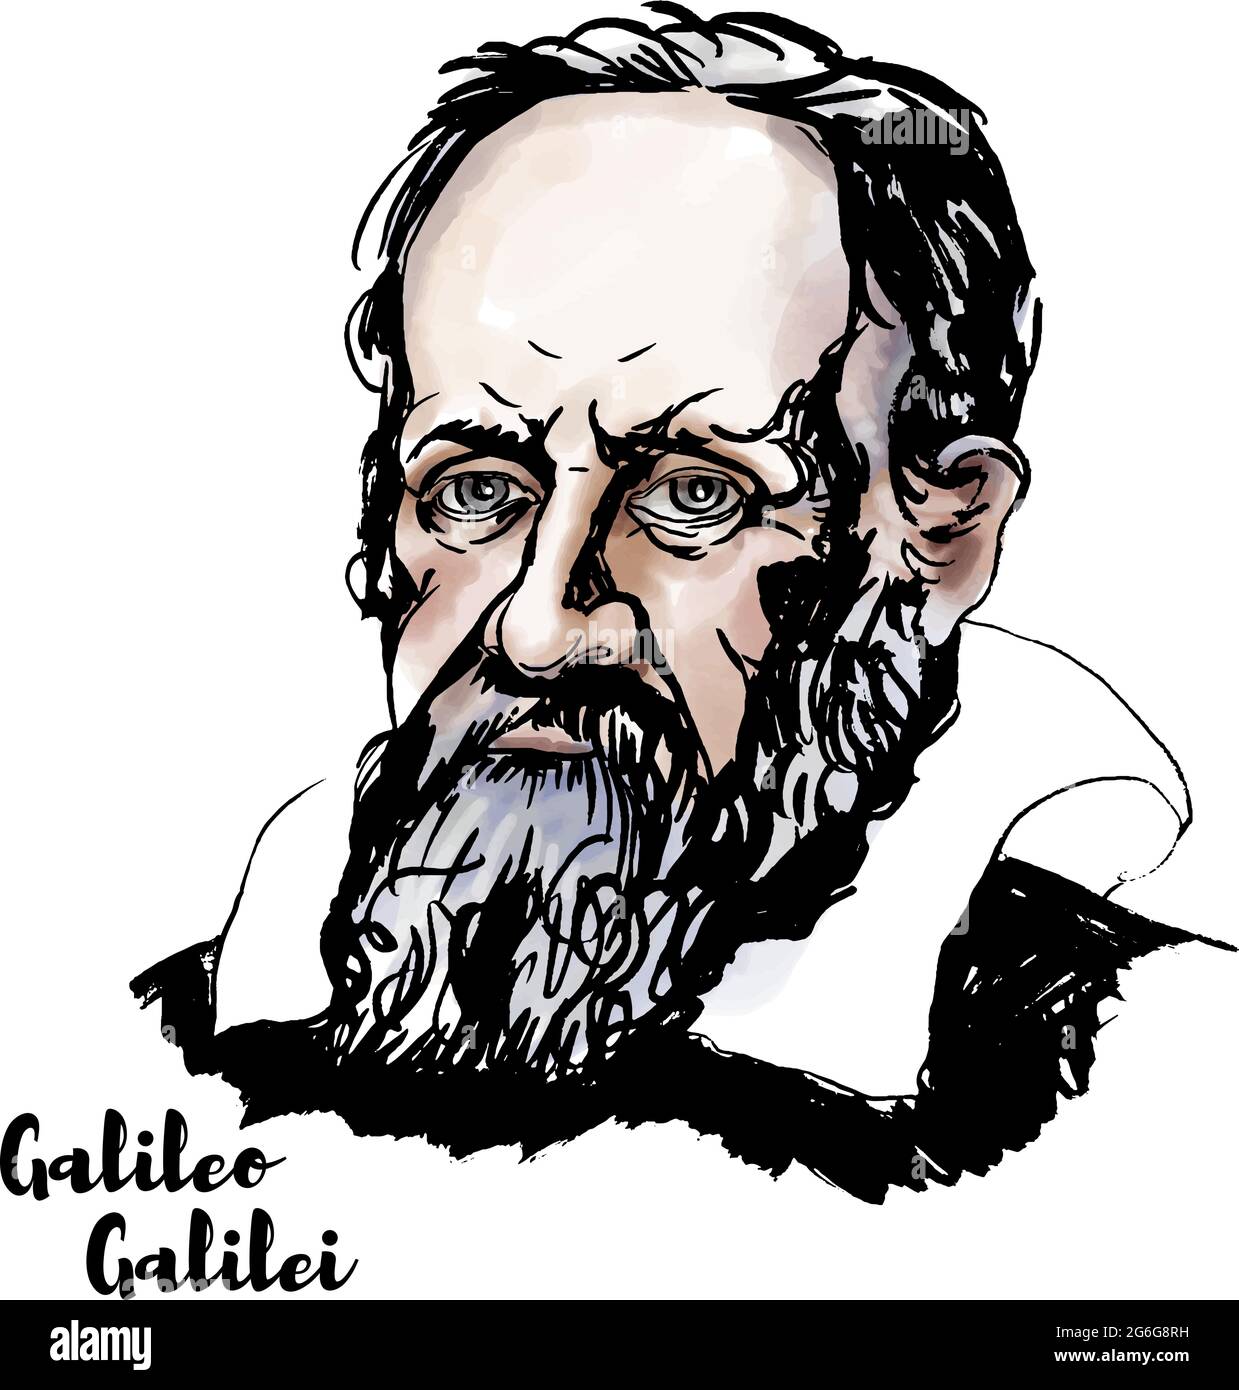 Galileo Galilei retrato vectorial acuarela con contornos de tinta. El polimath italiano. Ilustración del Vector